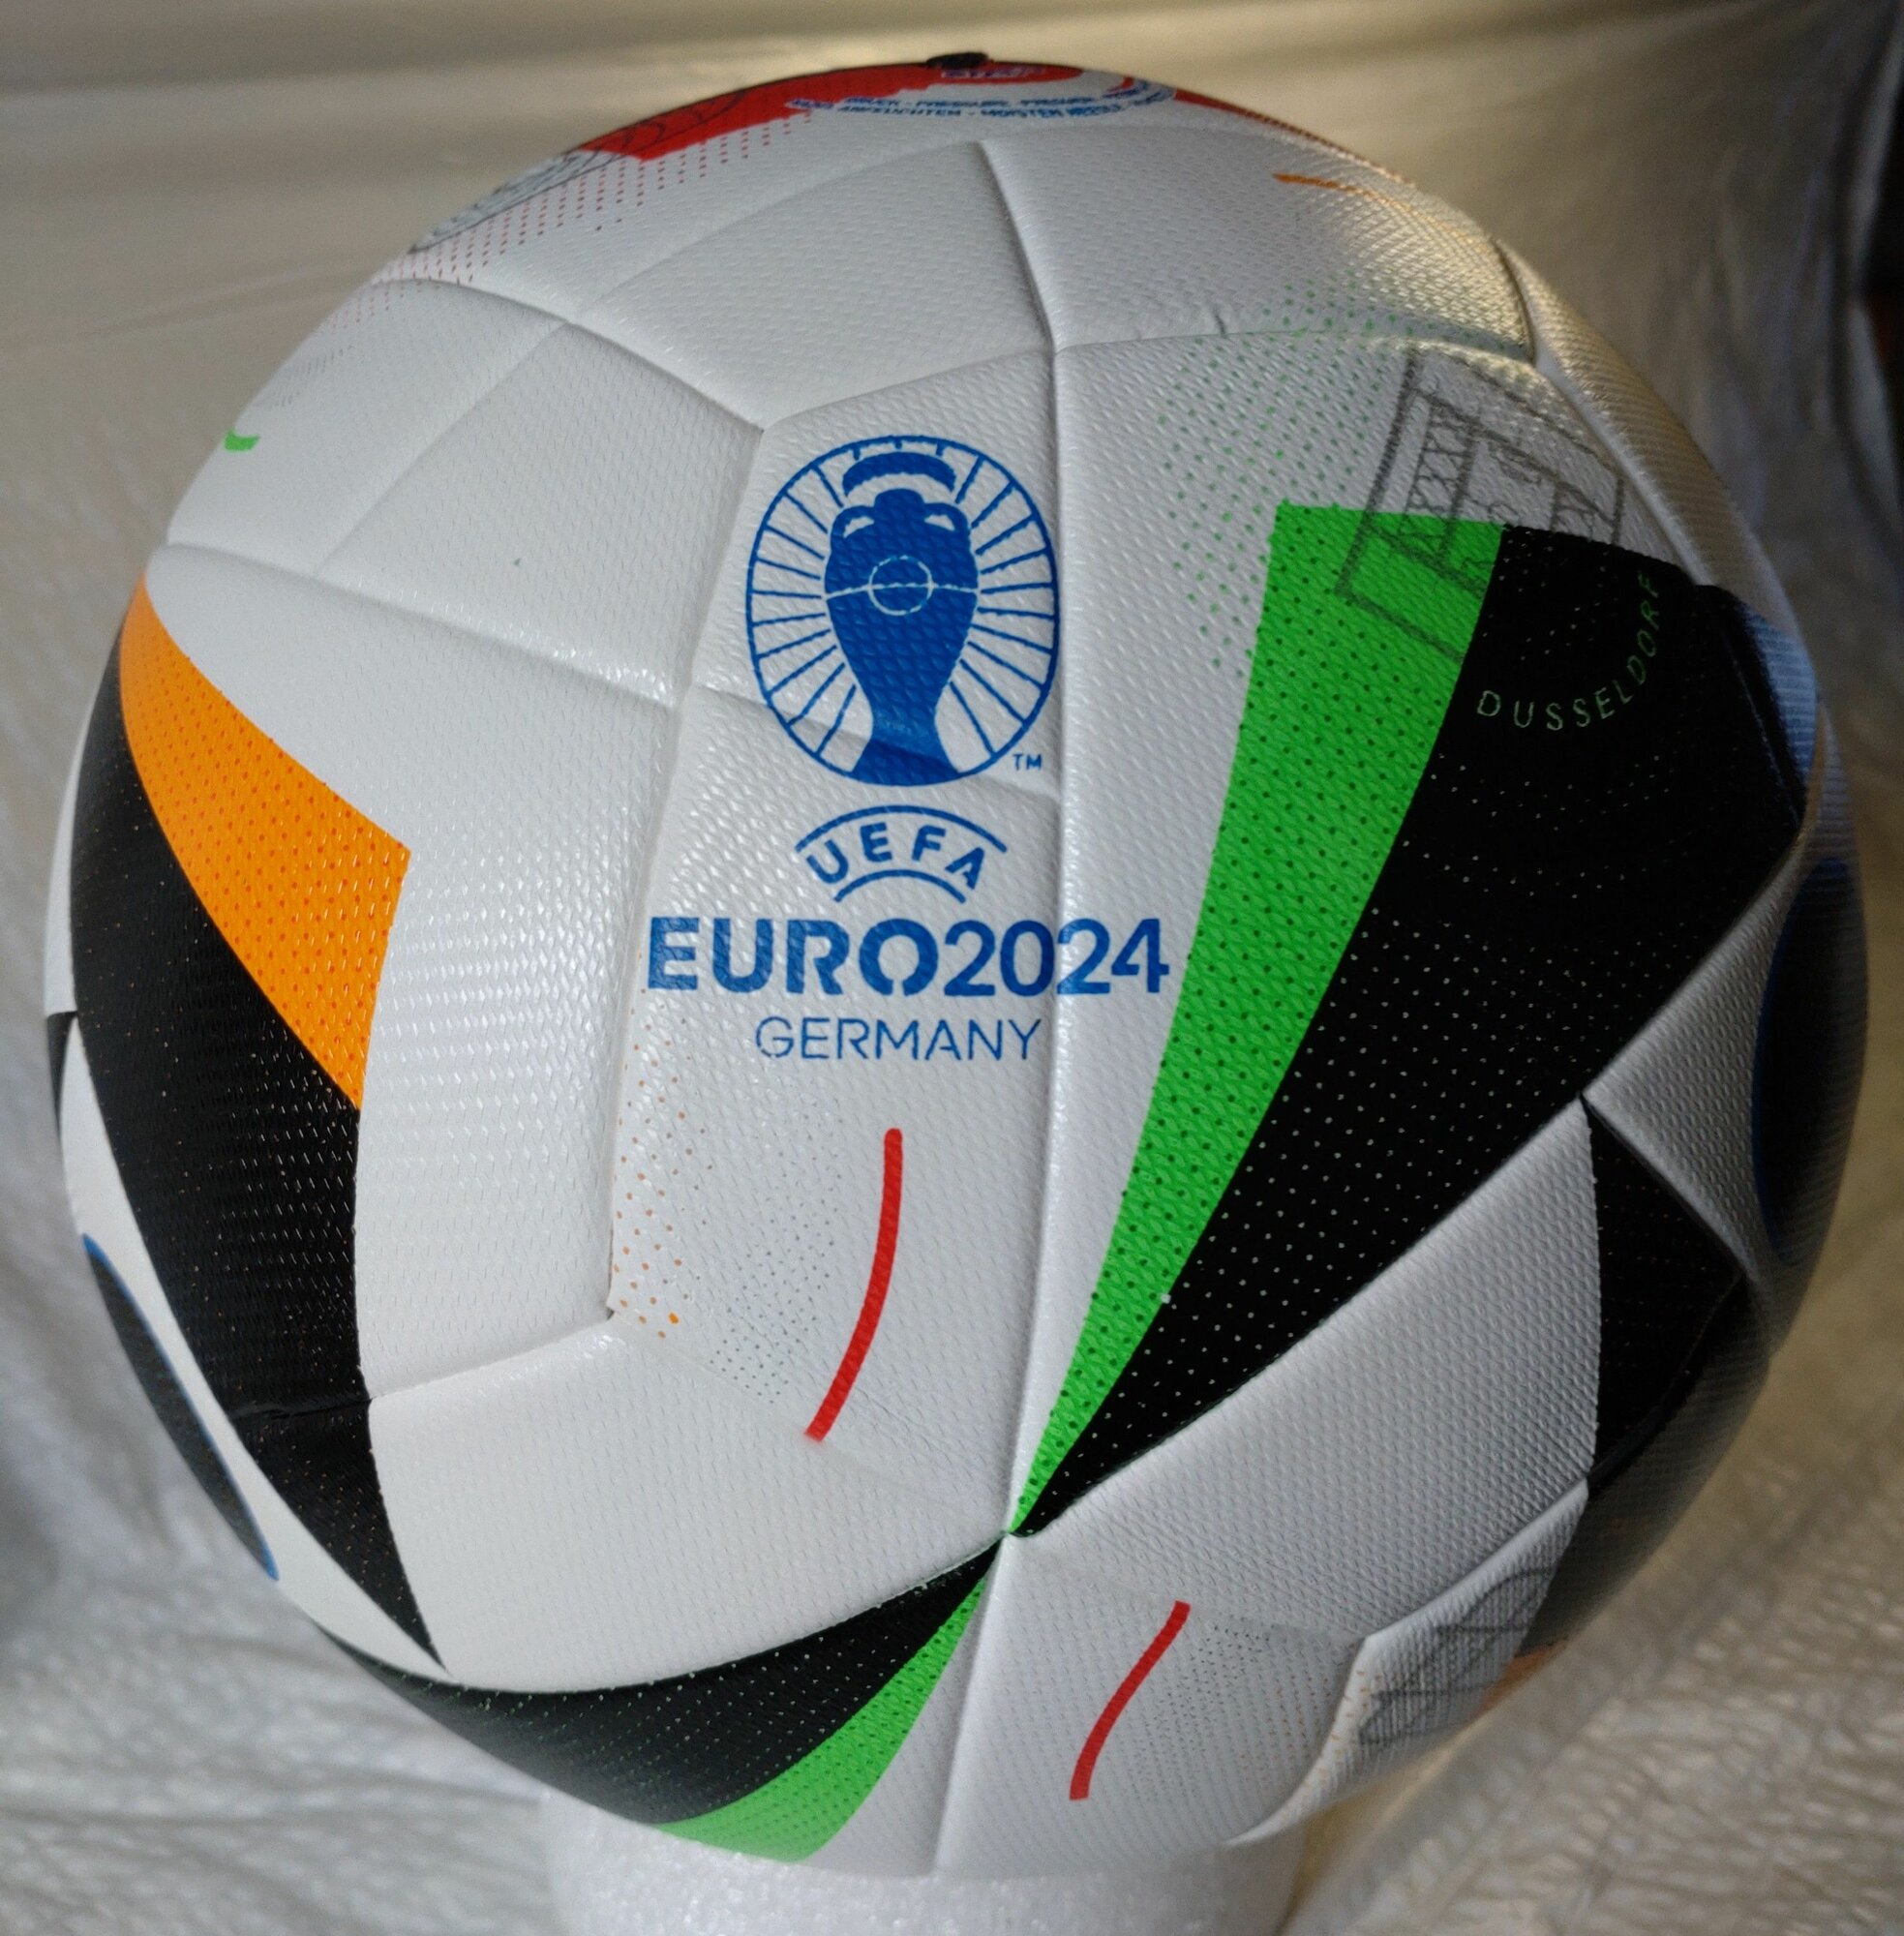 Мяч футбольный Евро 2024 Германия FIFA Quality Pro, размер 5 прошивной.